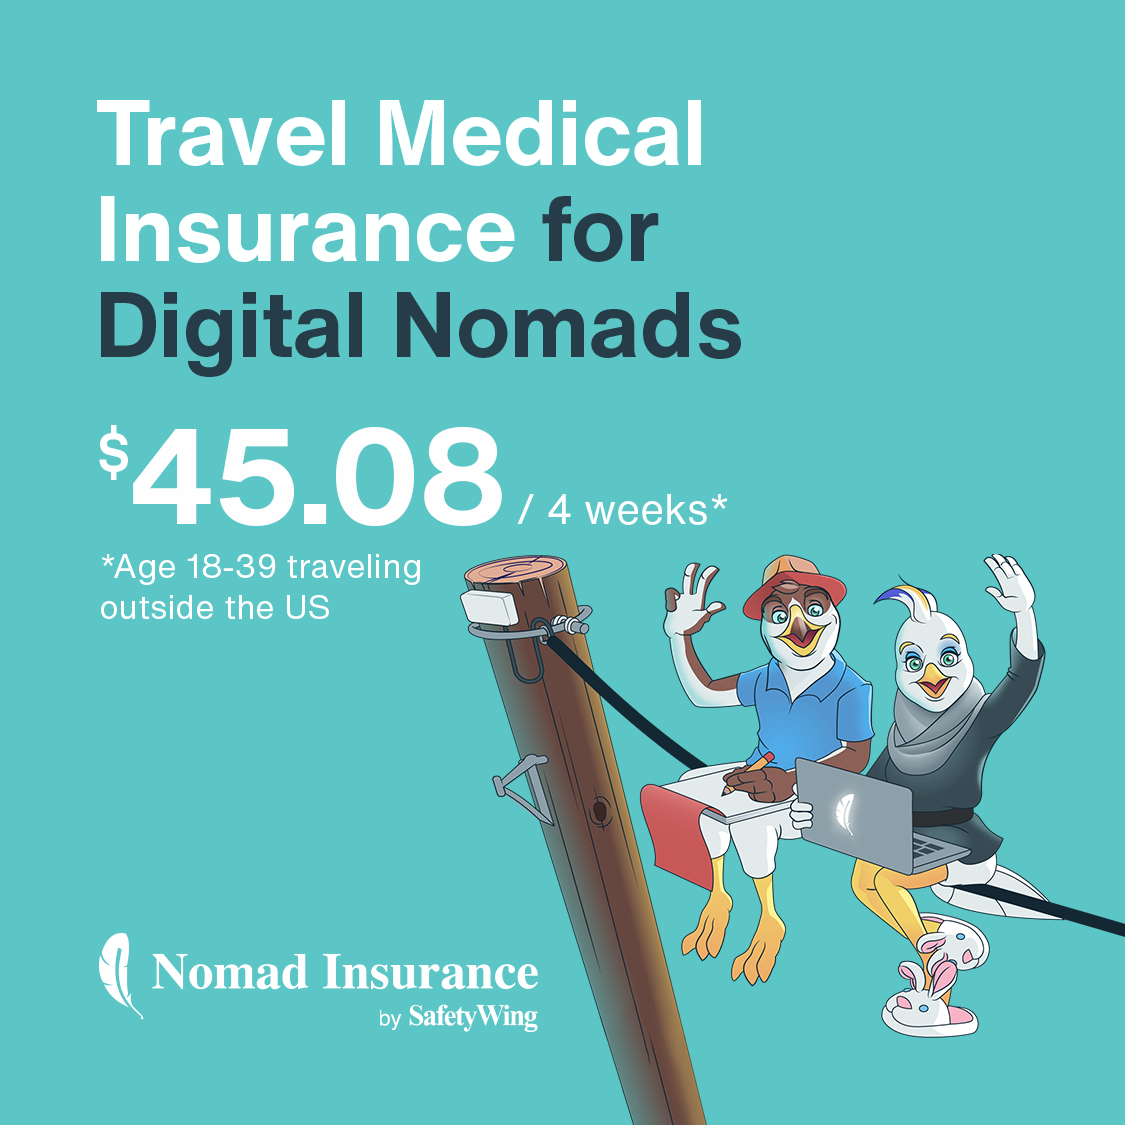 ¡Obtenga un seguro médico de viaje!